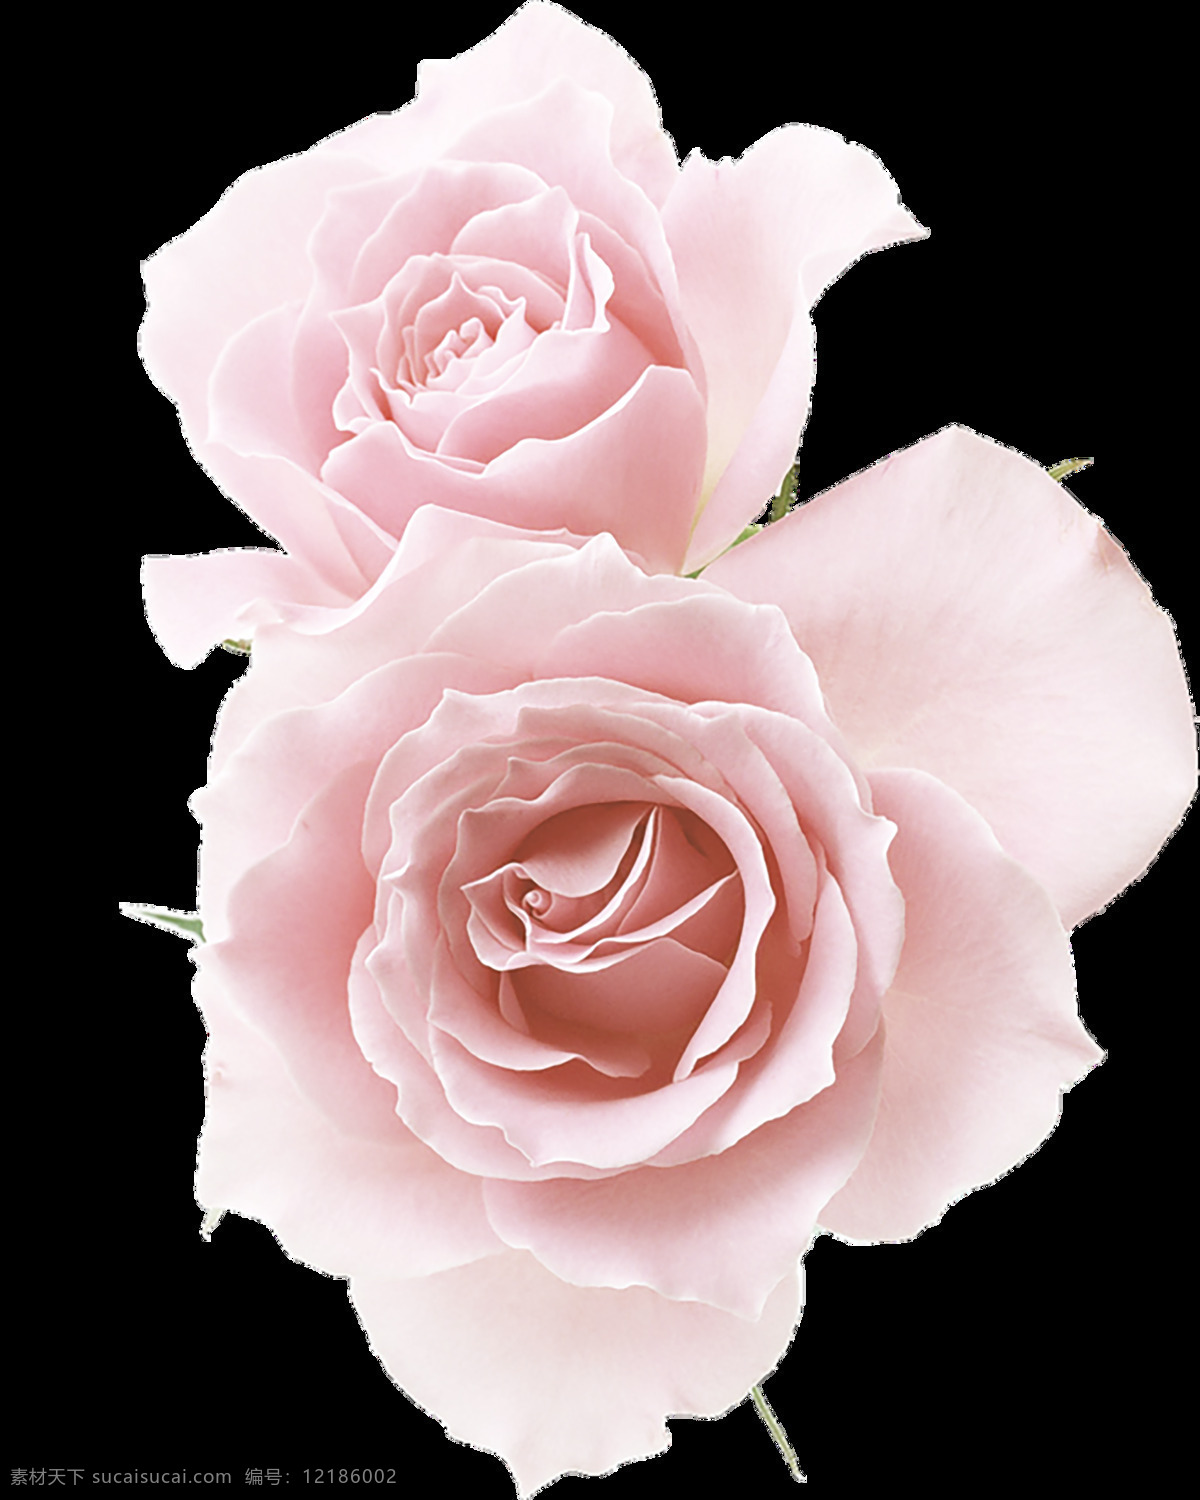 粉色 花朵 玫瑰花 美丽鲜花 花卉花草 漂亮花朵 玫瑰花素材 鲜艳花朵 花草植物 底纹背景 鲜花摄影